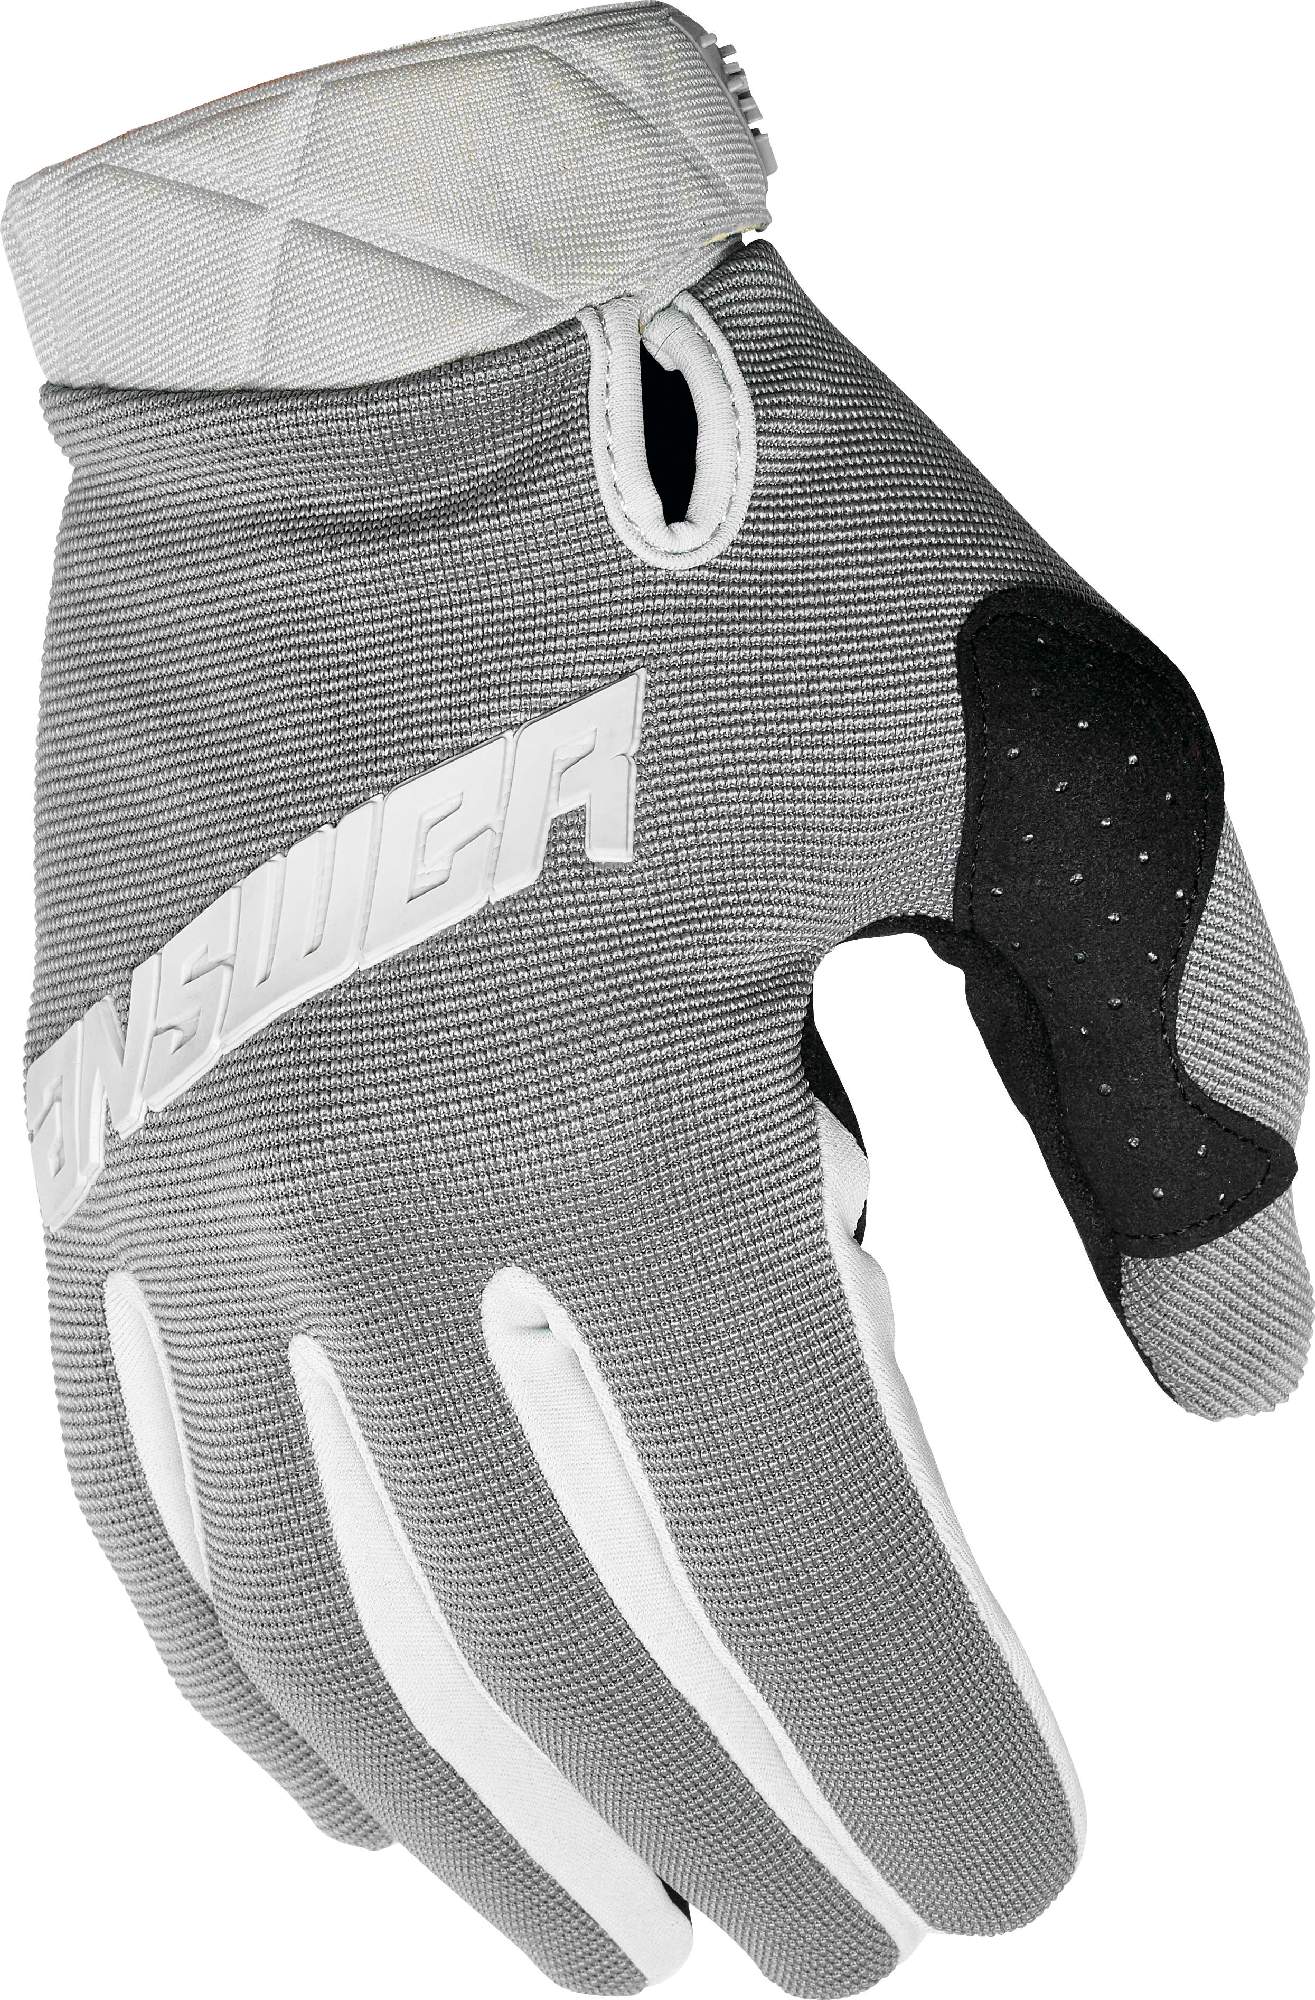 ghostrunner gloves